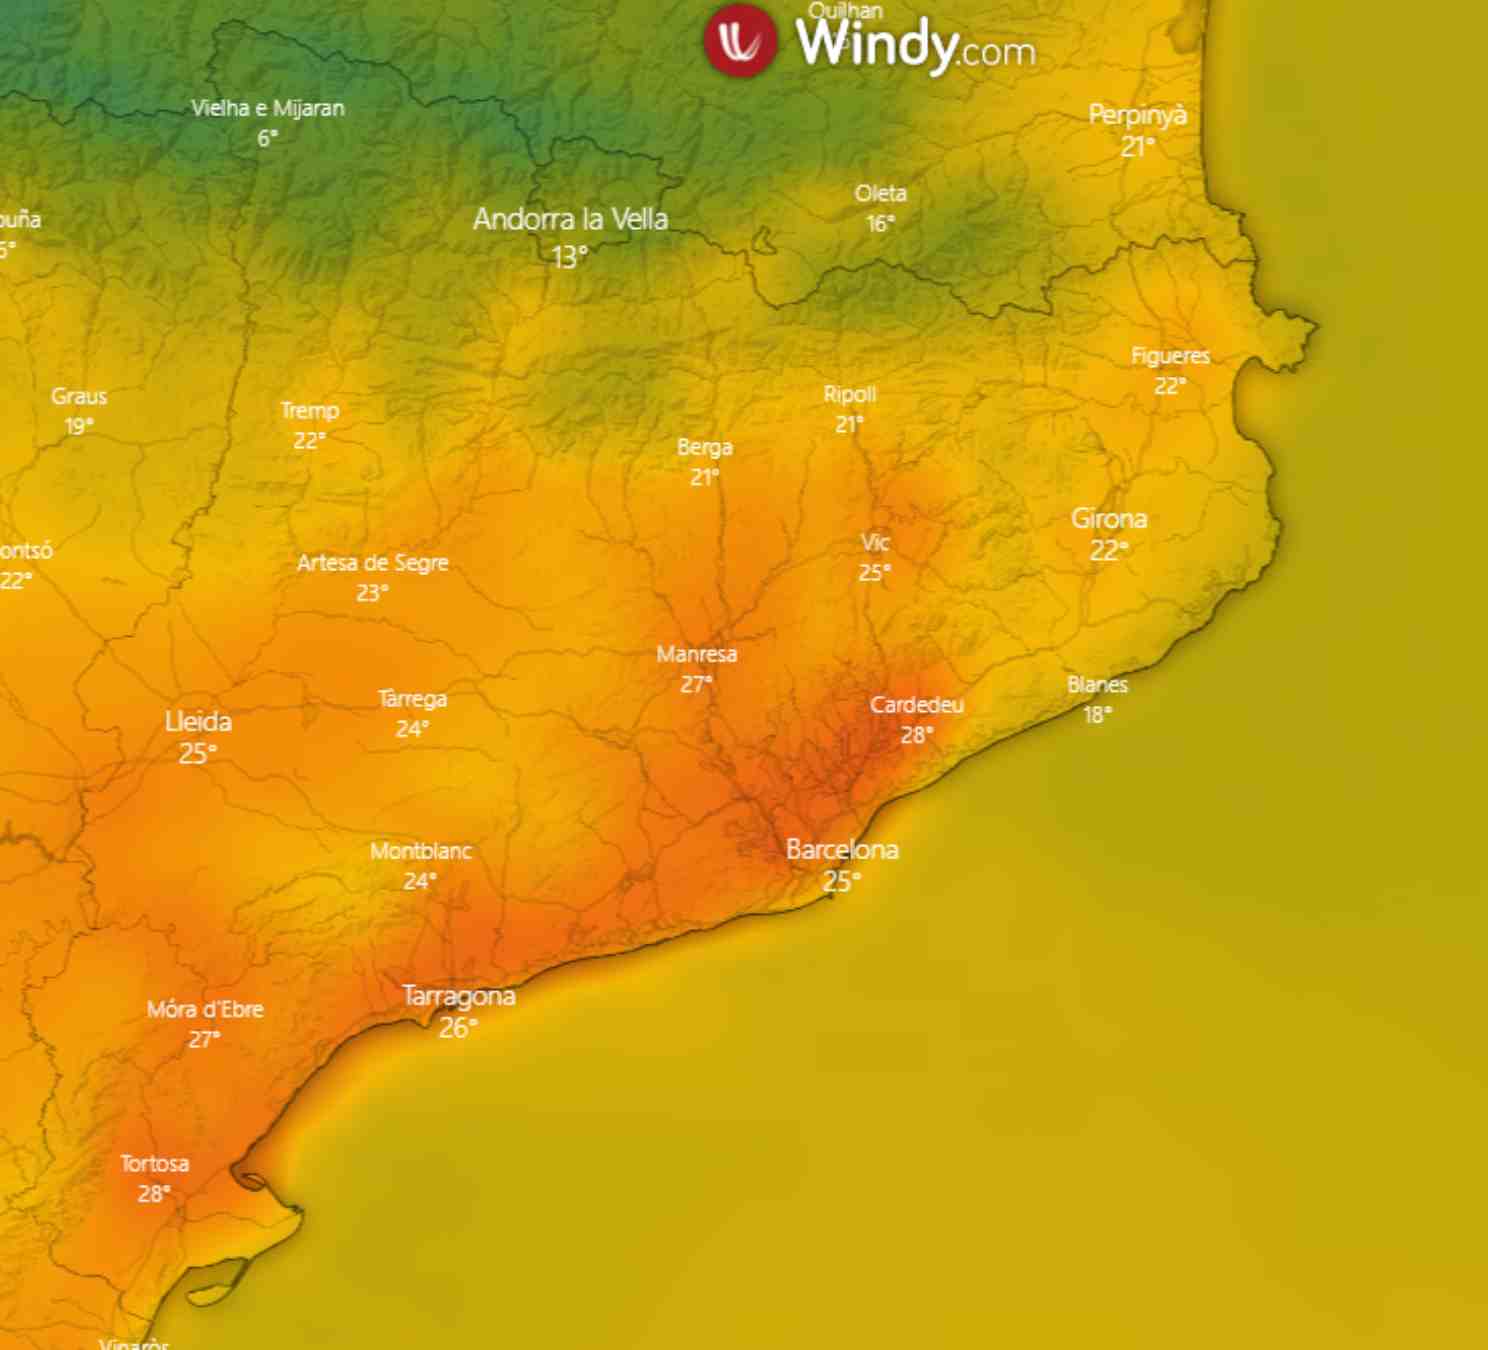 El miércoles hará más calor entre el Delta del Ebro y Barcelona: ¡se superarán los 25 ºC! / Windy